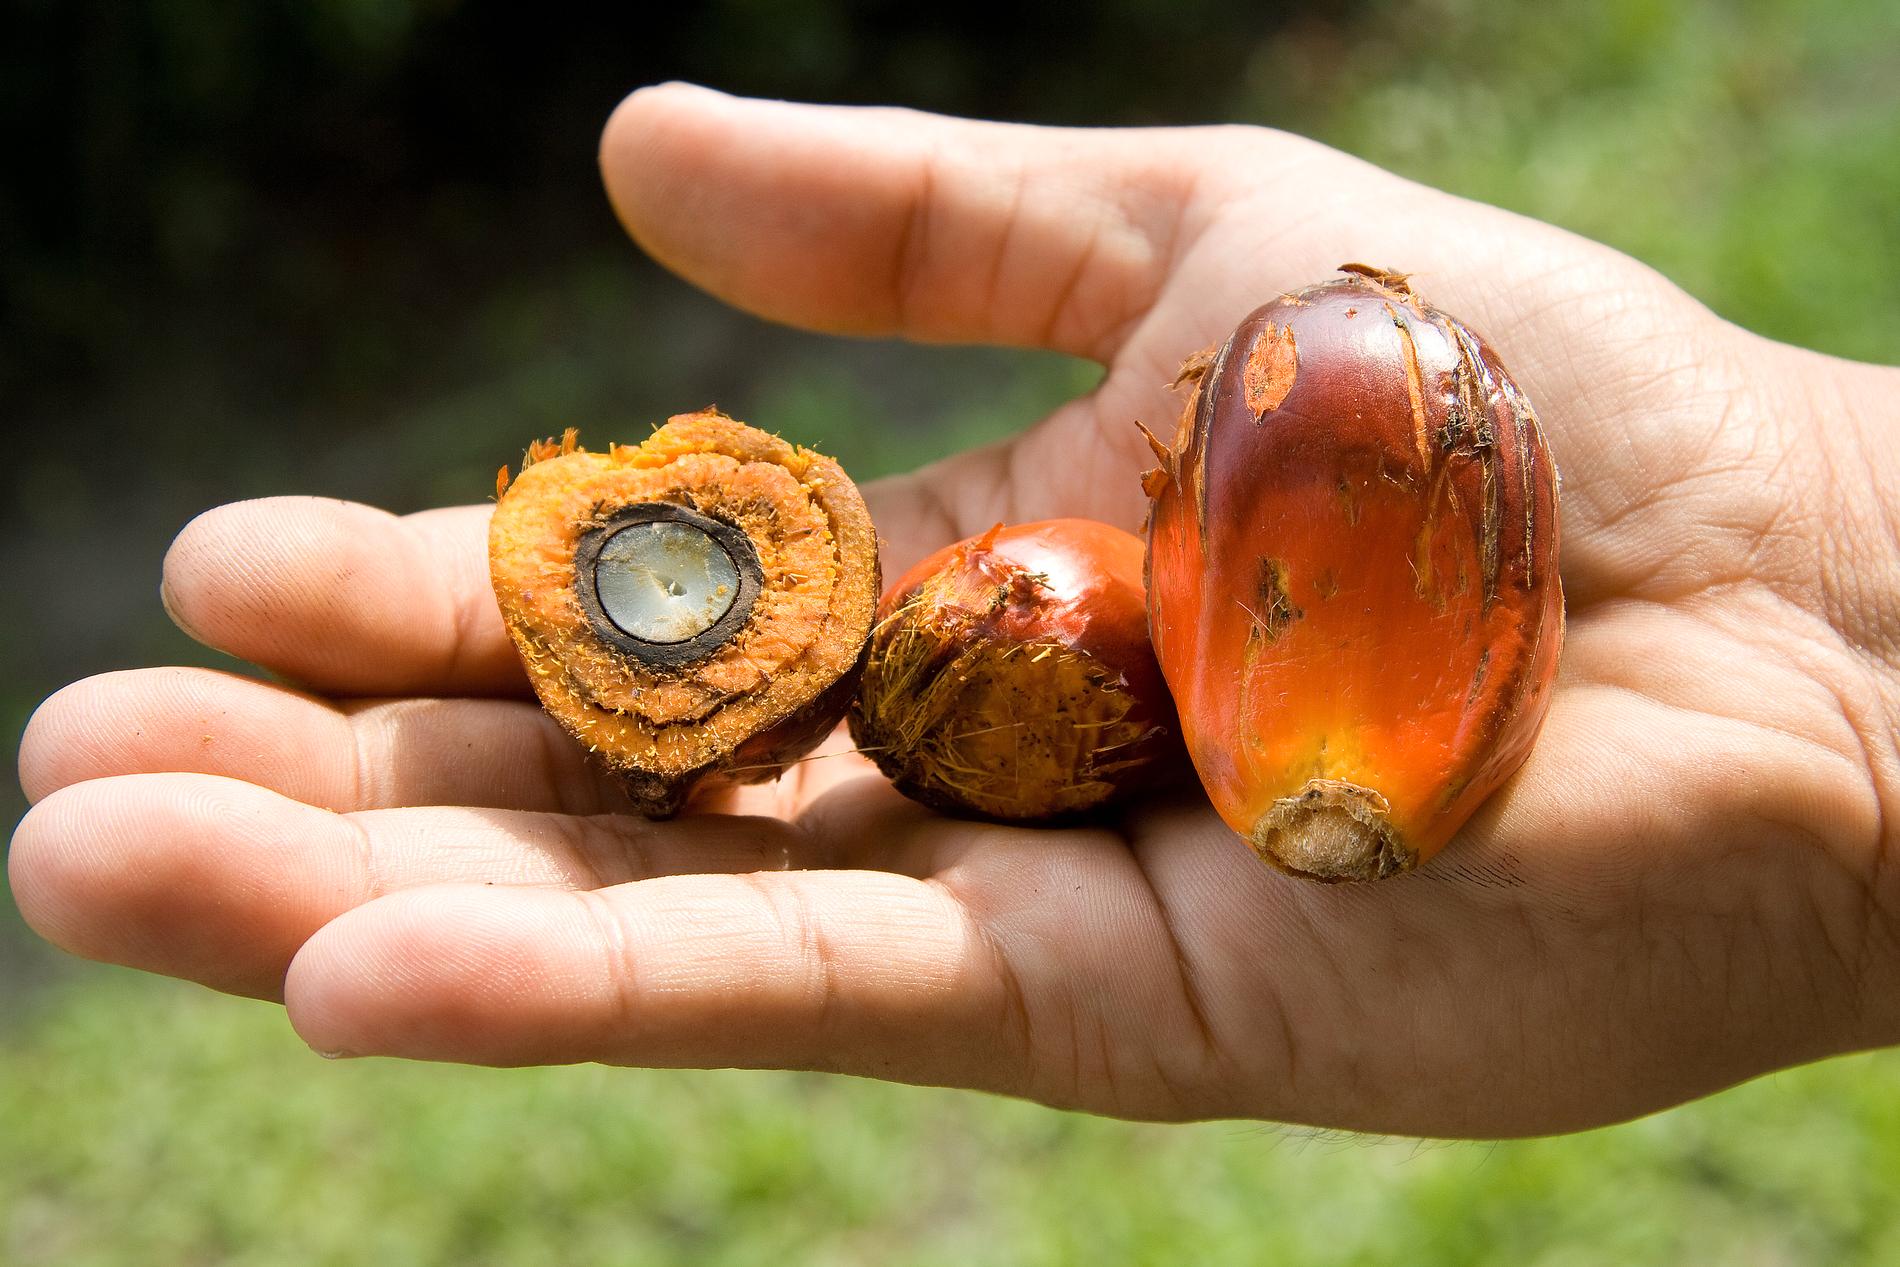 Oljepalmens frukter som palmoljan utvinns från. Arkivbild.